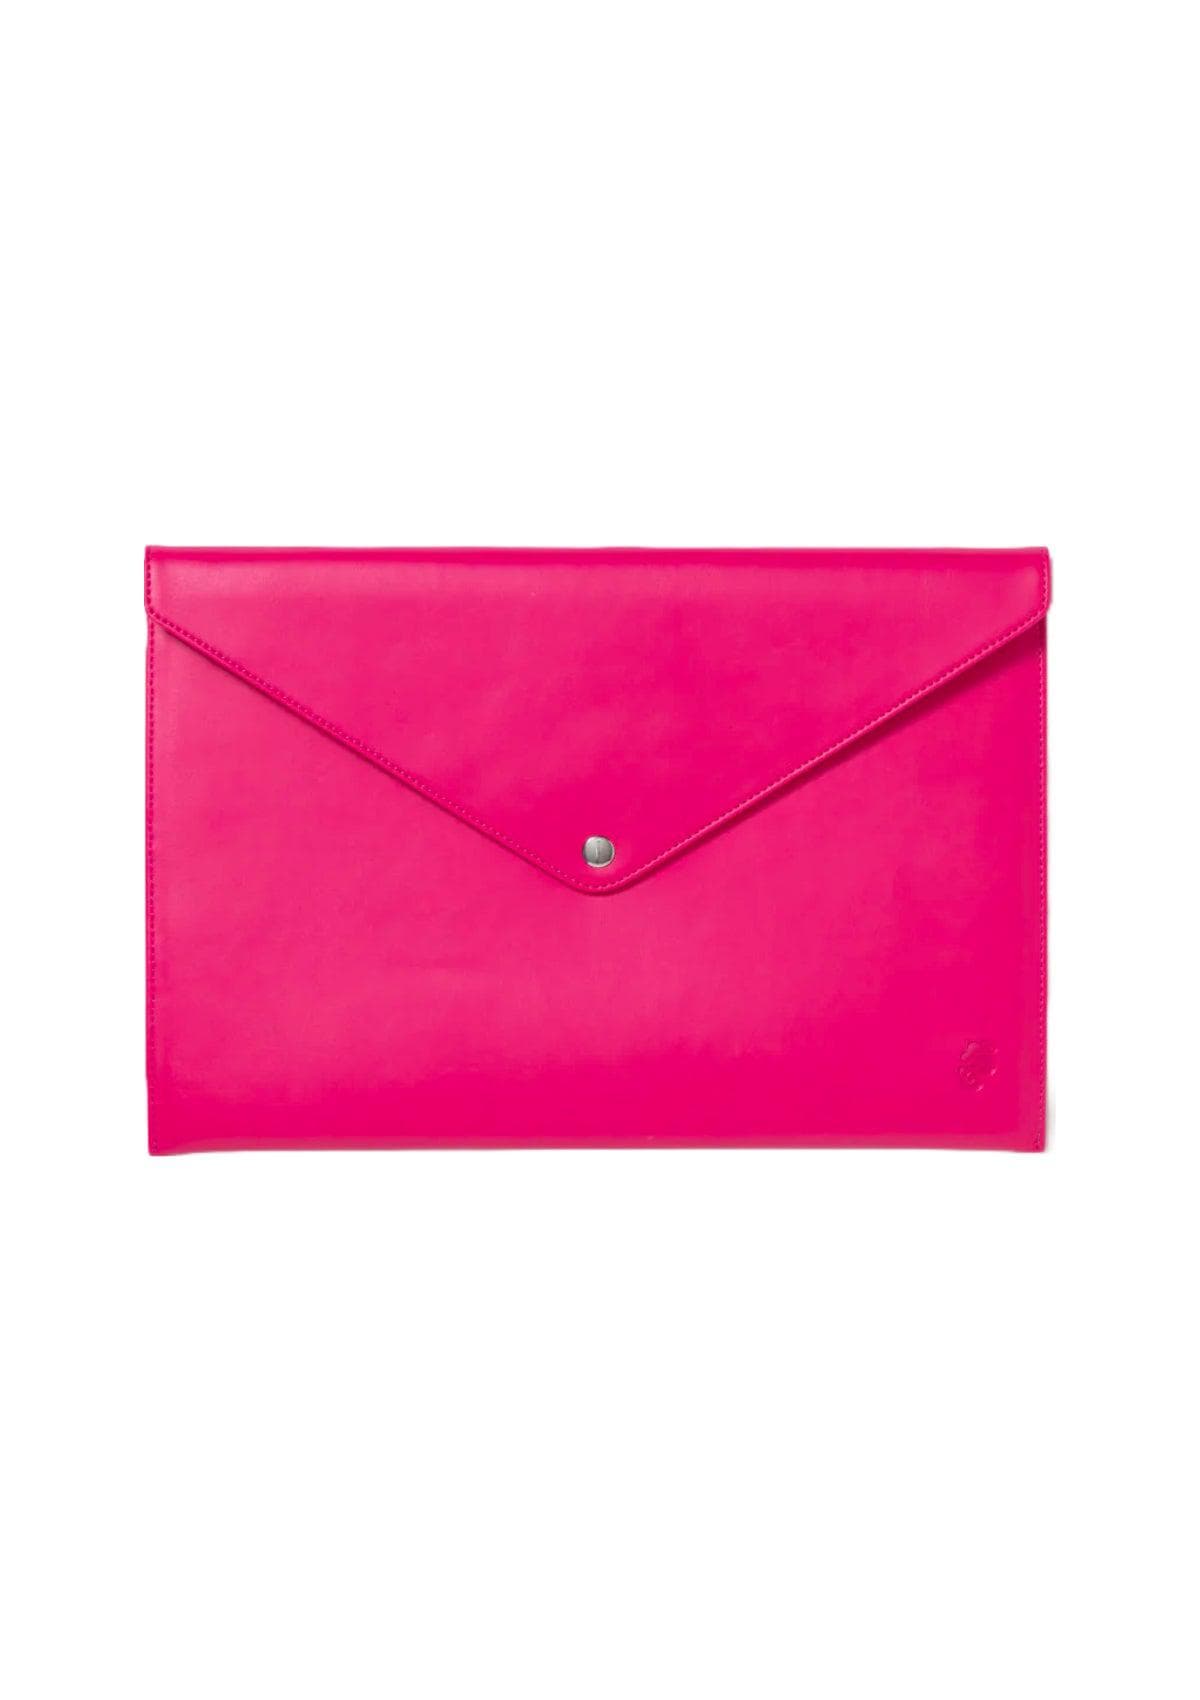 Sarelly Envelope Portalaptop - Rosa Mexicano